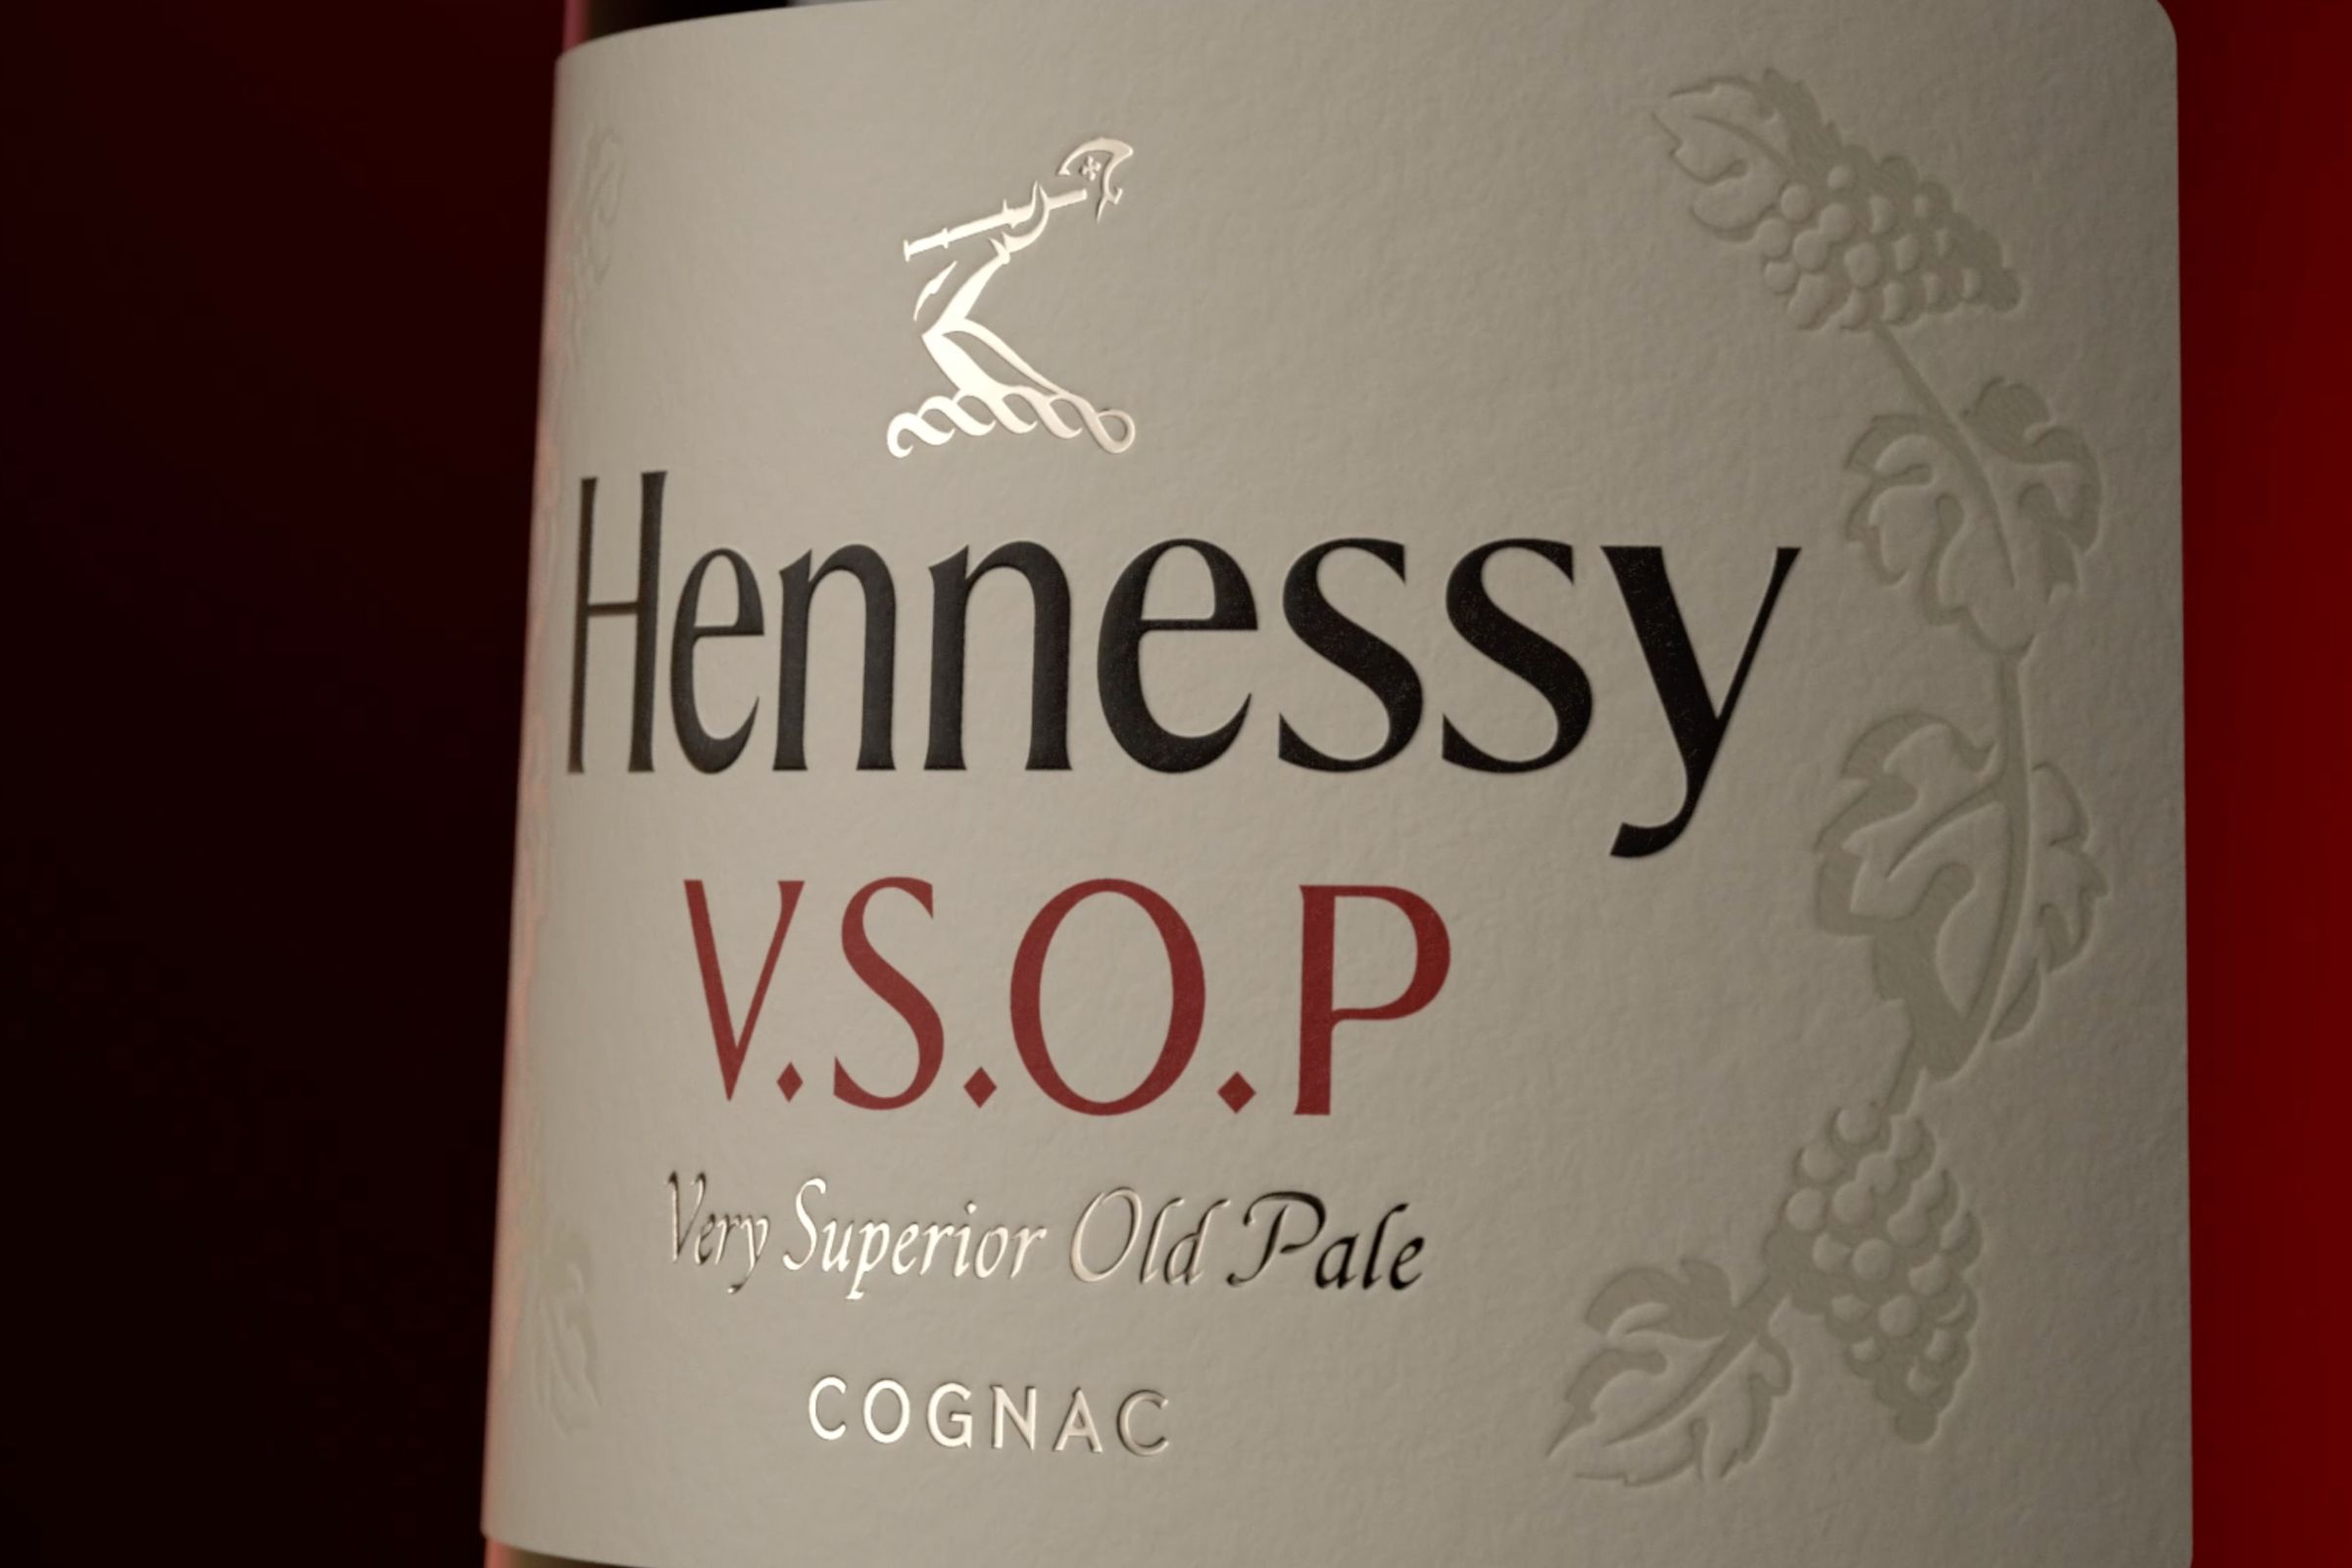 Hennessy VSOP label detail